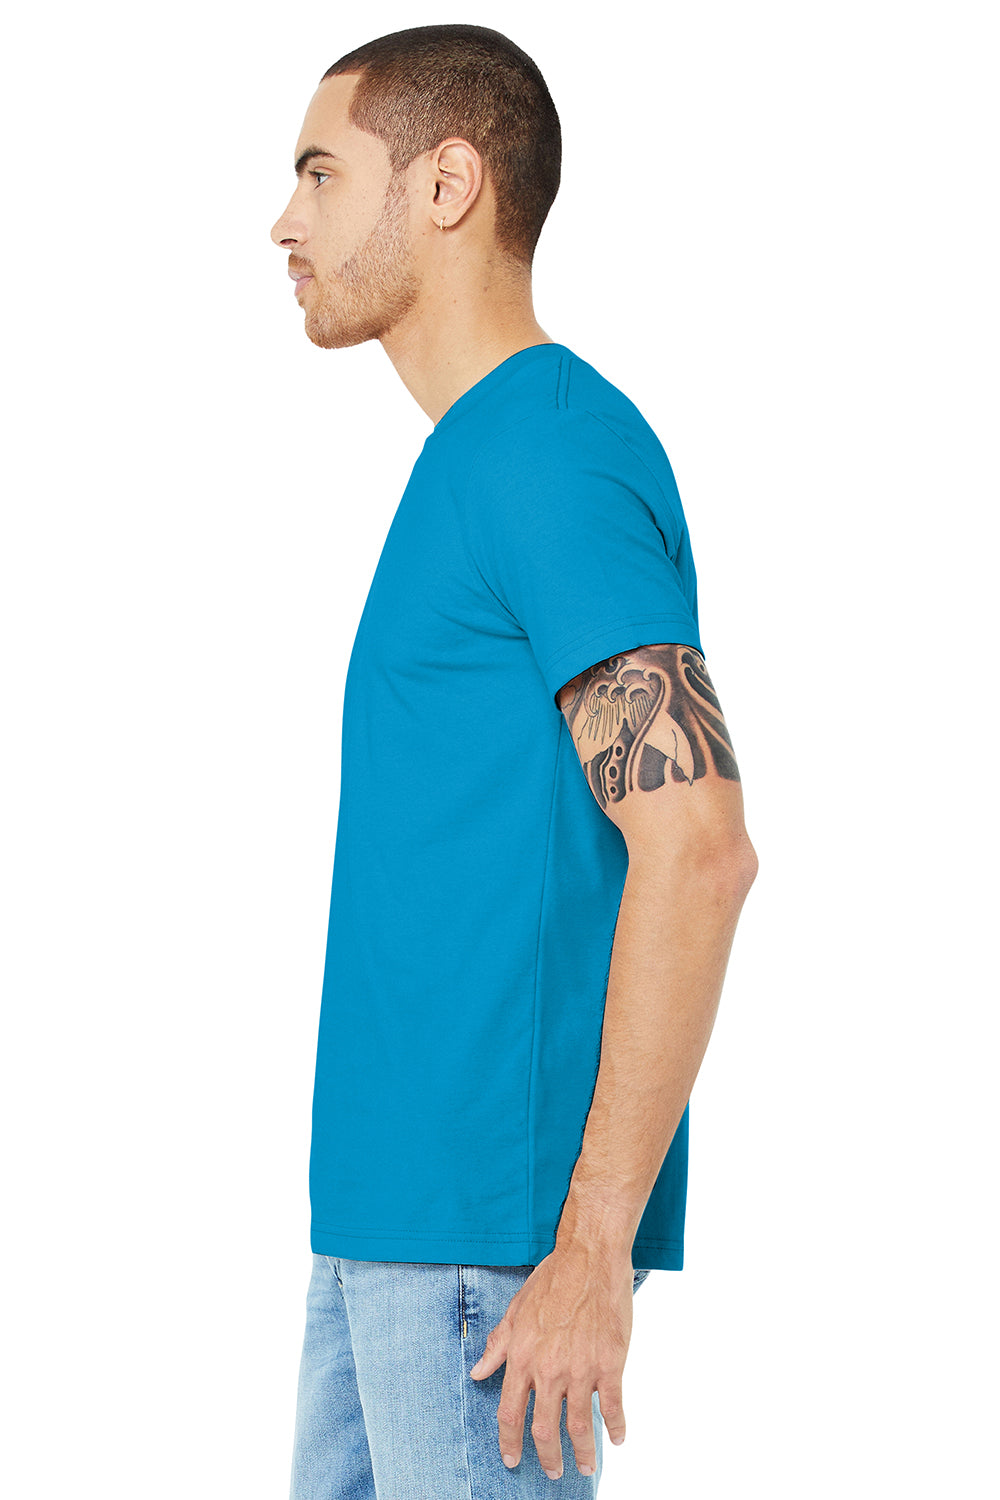 Bella + Canvas BC3001/3001C Mens Jersey Short Sleeve Crewneck T-Shirt Aqua Blue Model Side